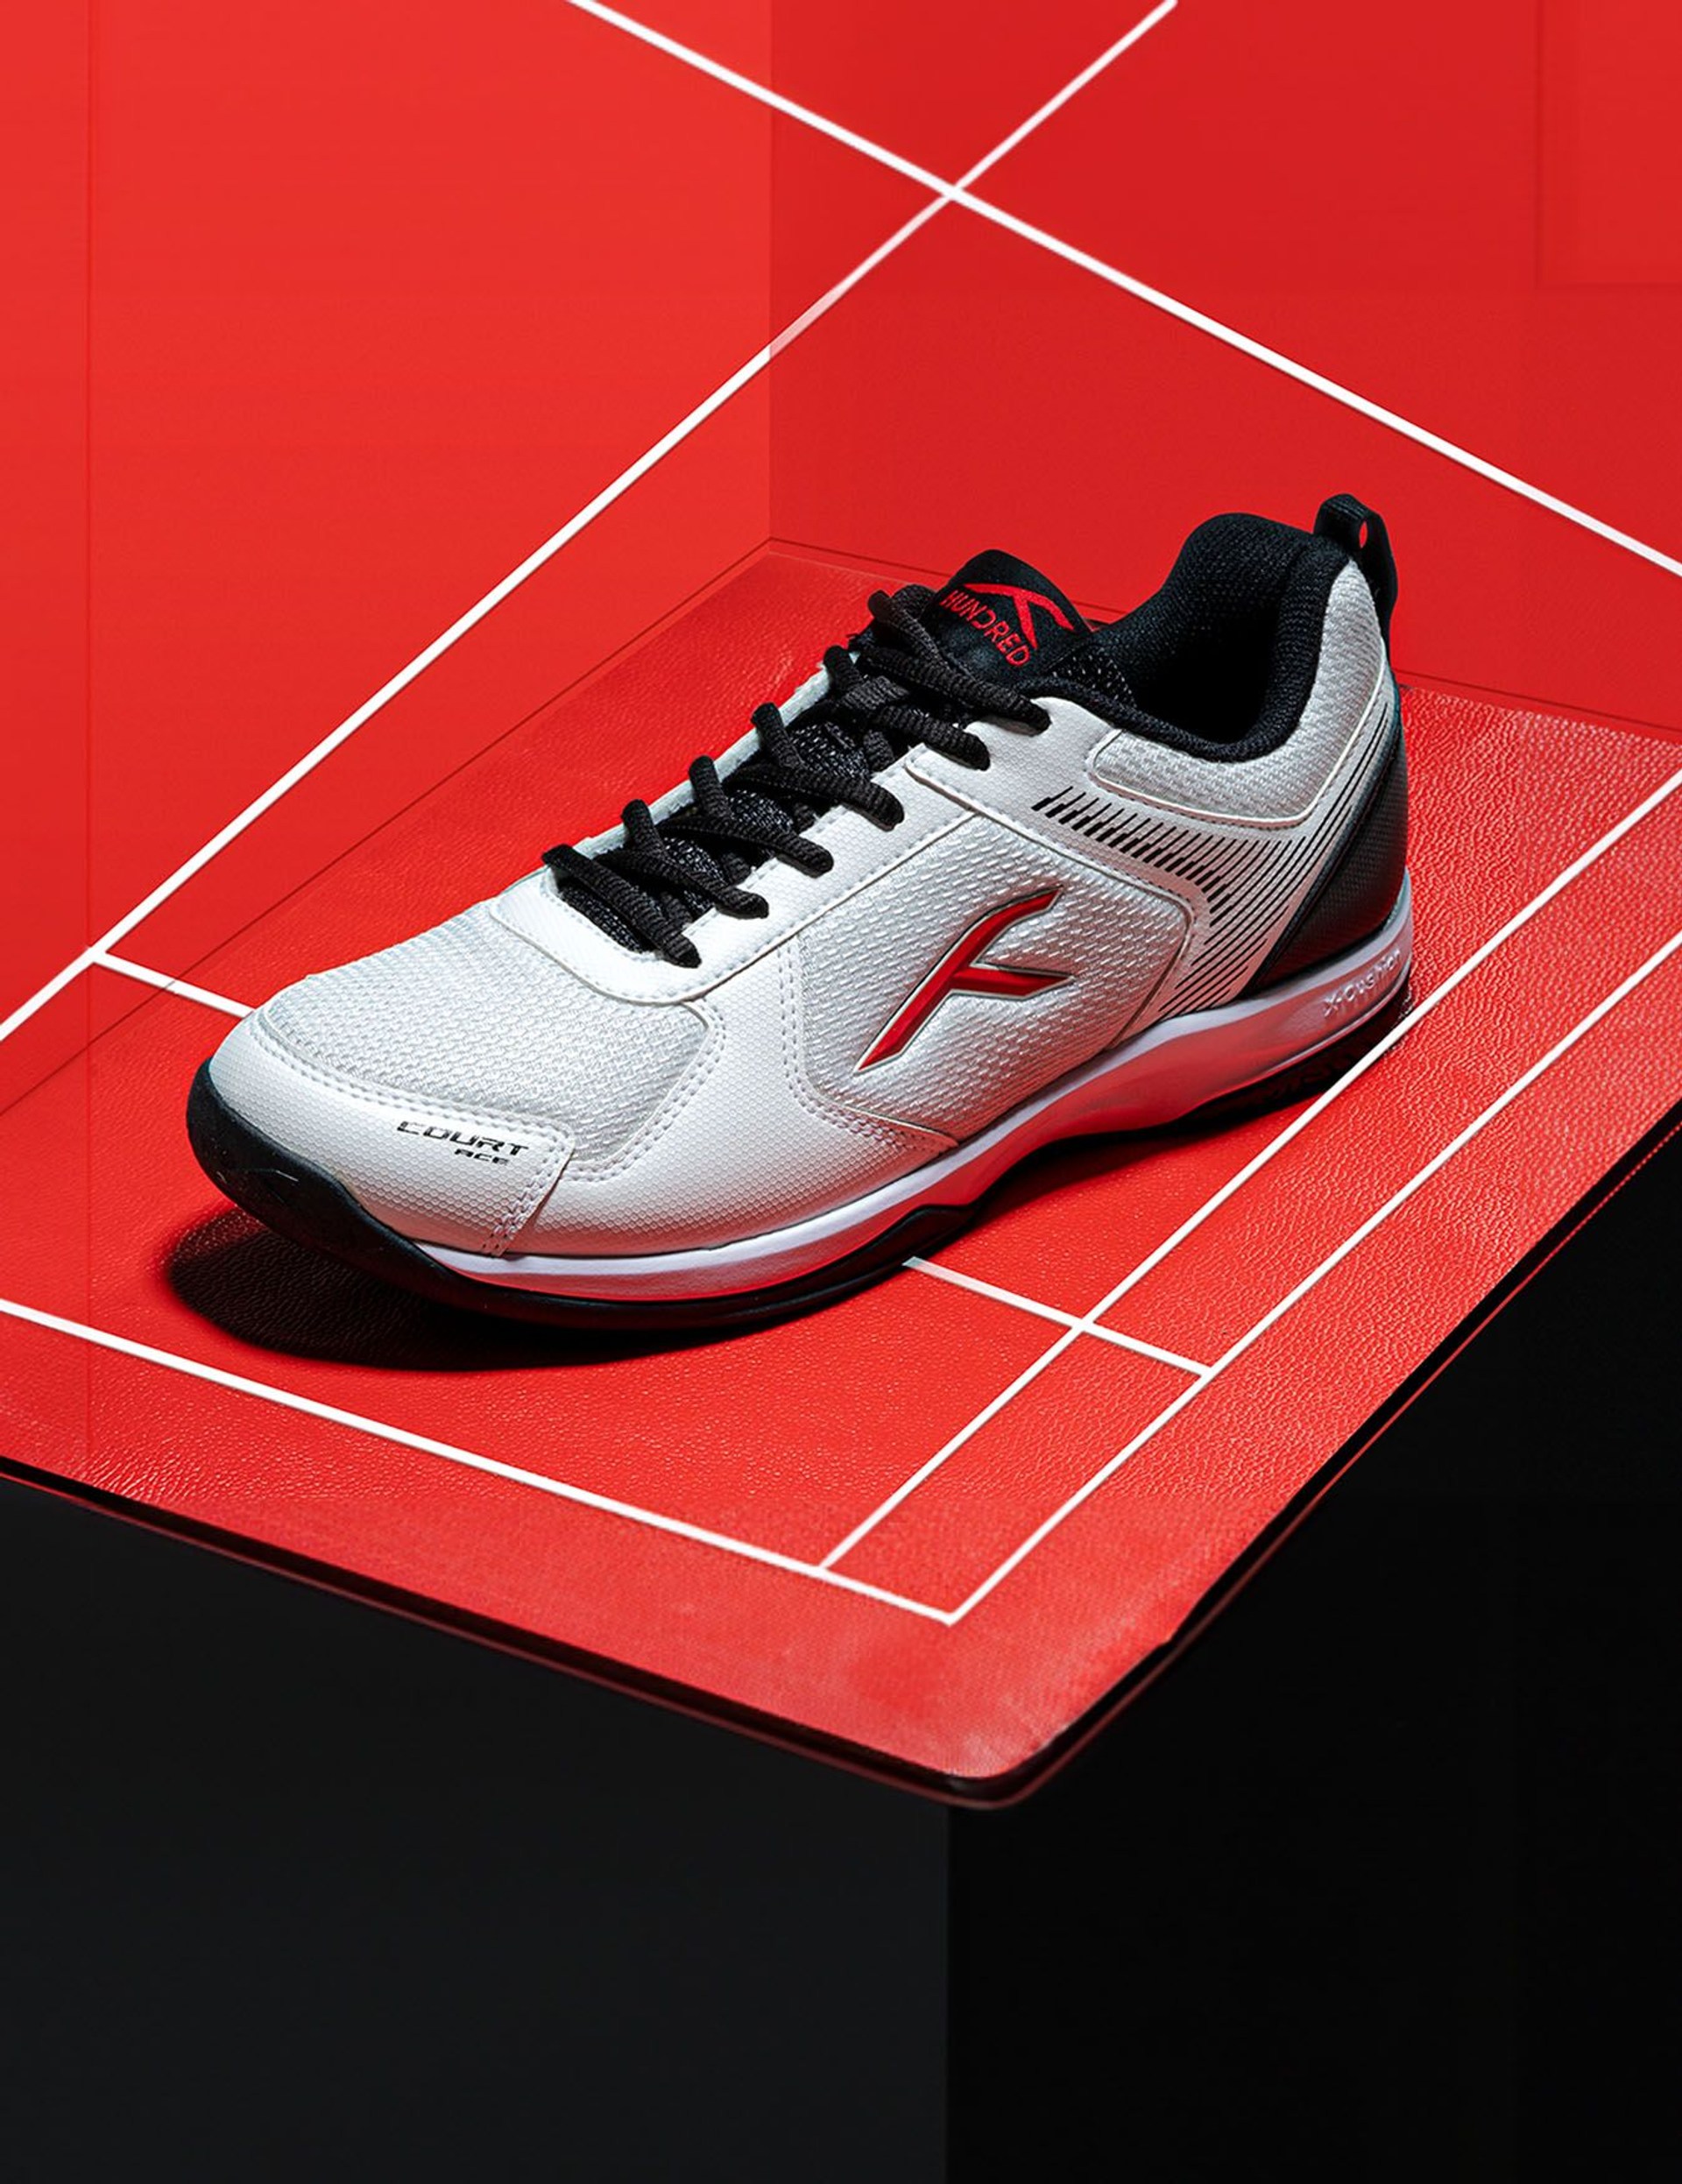 Court Ace - Badminton Shoe